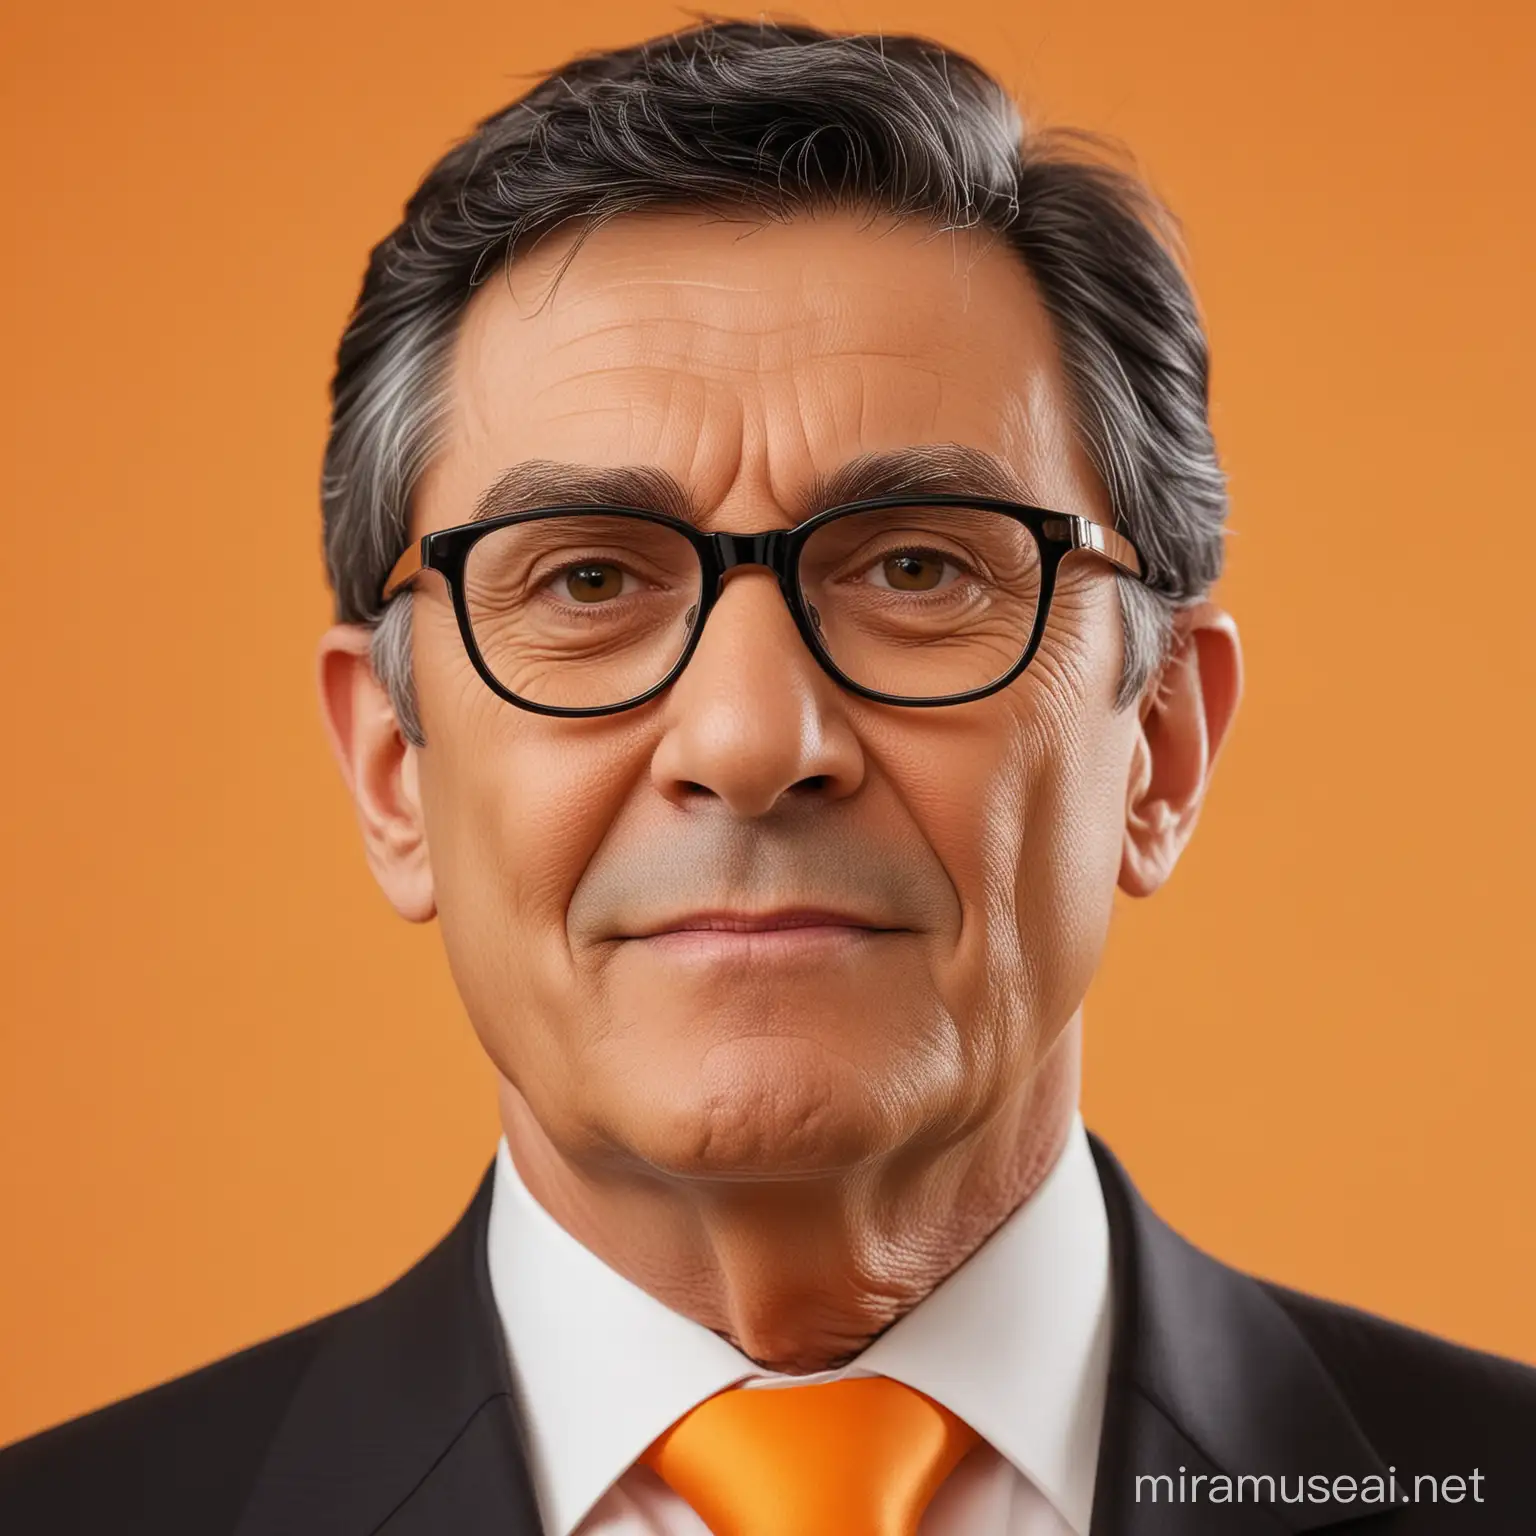 Político presidente popular de 61 años peinado con pelo negro y gafas finas con fondo naranja 